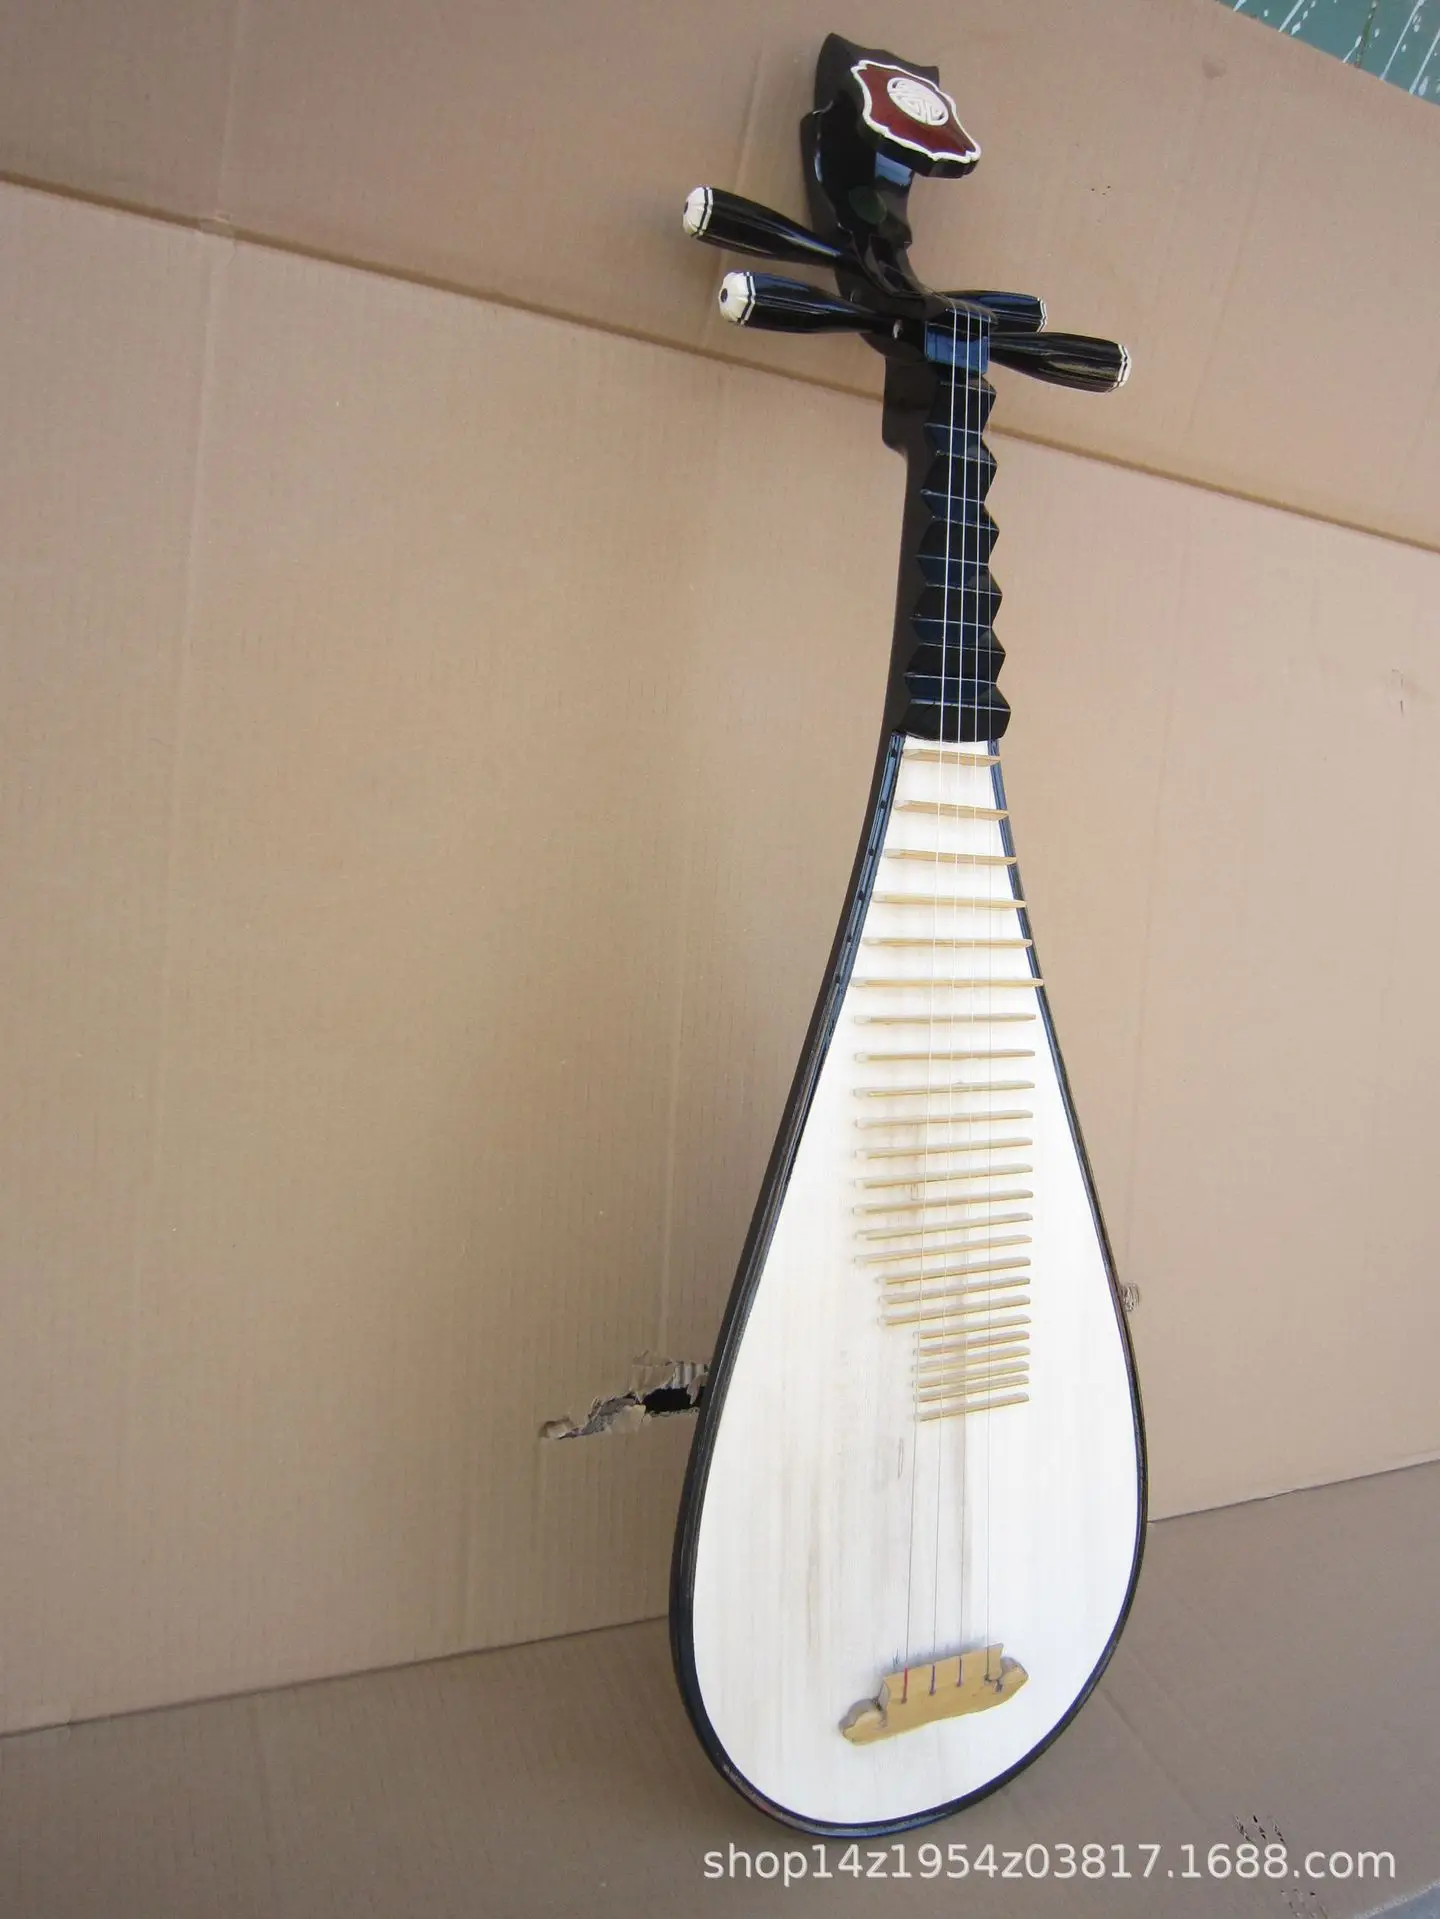 Пипа китайский лутовой струнный инструмент цитра для взрослых и детей | Спорт